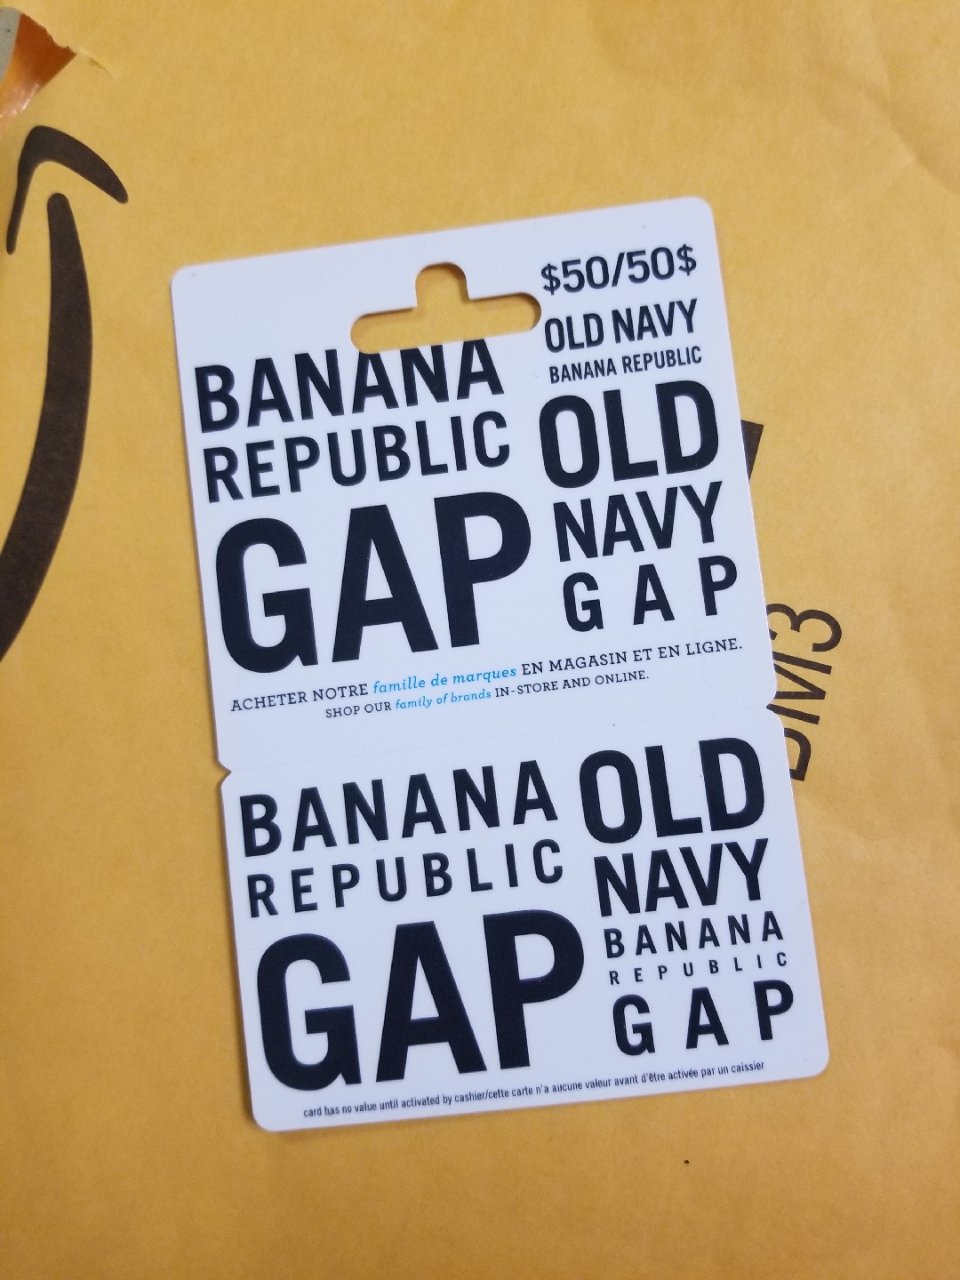 Gap $50八折礼品卡到了...